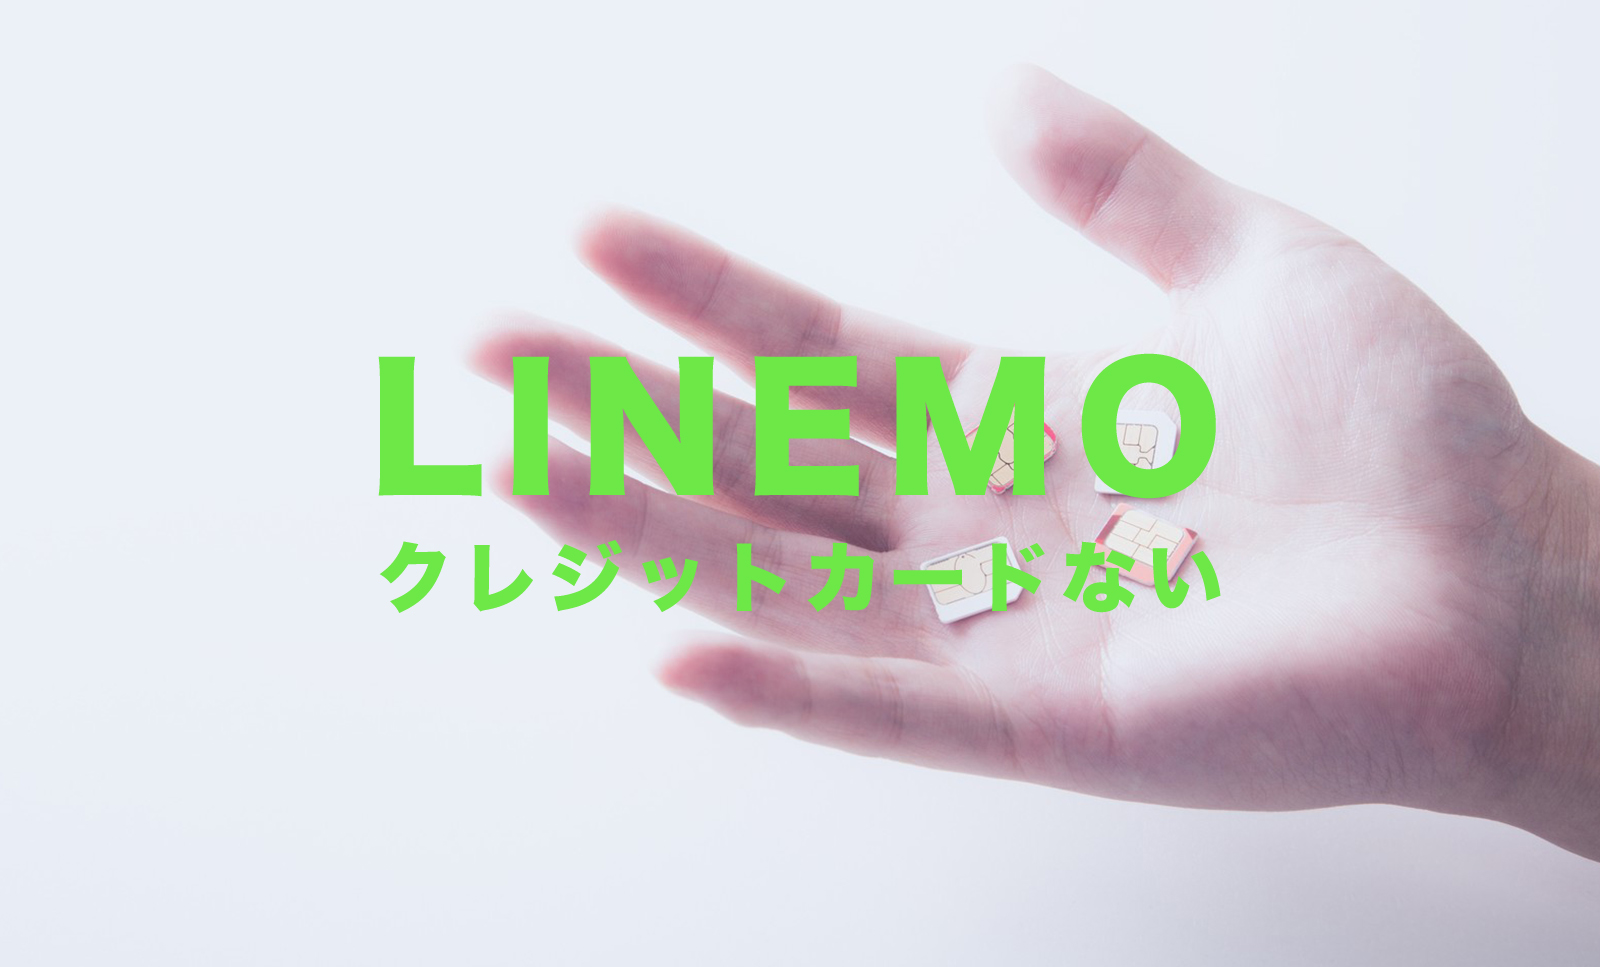 LINEMO(ラインモ)でクレジットカードがない場合&なしでも契約できる？のサムネイル画像